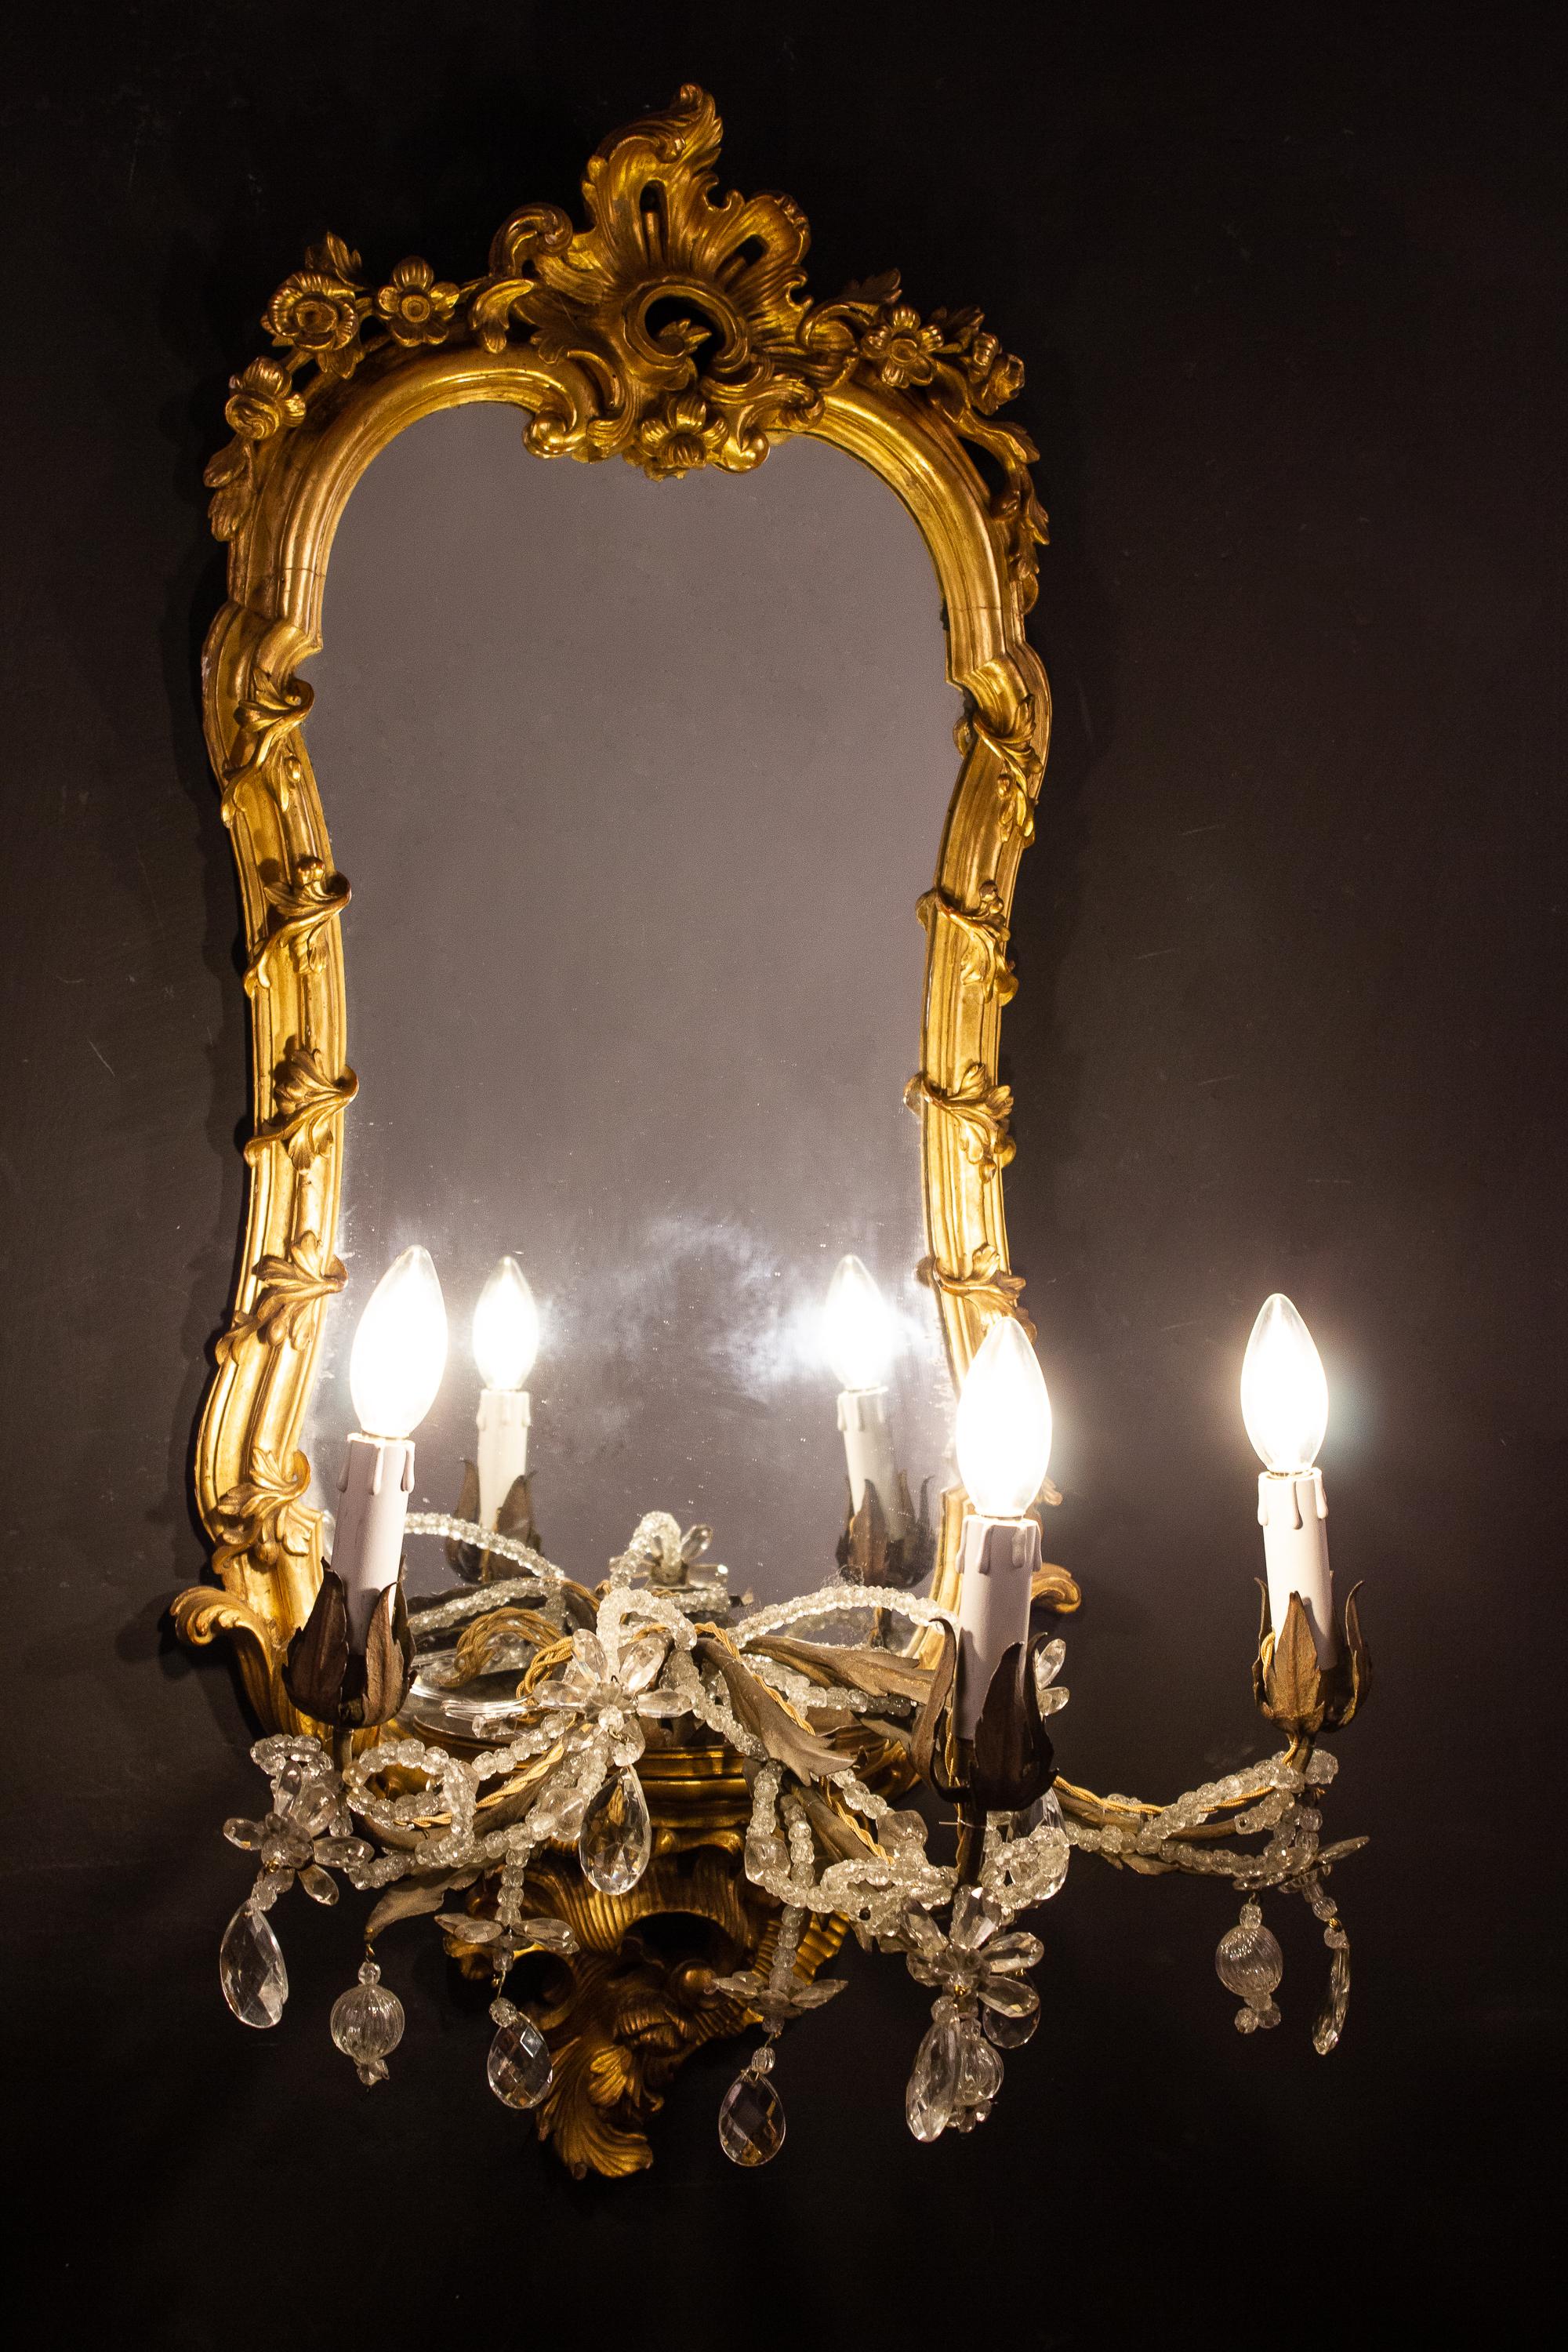 Wunderbarer, seltener Satz von vier fein geschnitzten und vergoldeten Spiegeln des 18. Jahrhunderts mit drei Kerzenarmen, Roma, 1750.
Die Kerzenarme können auch abgenommen und als Sockel für eine Vase oder eine Porzellanskulptur verwendet